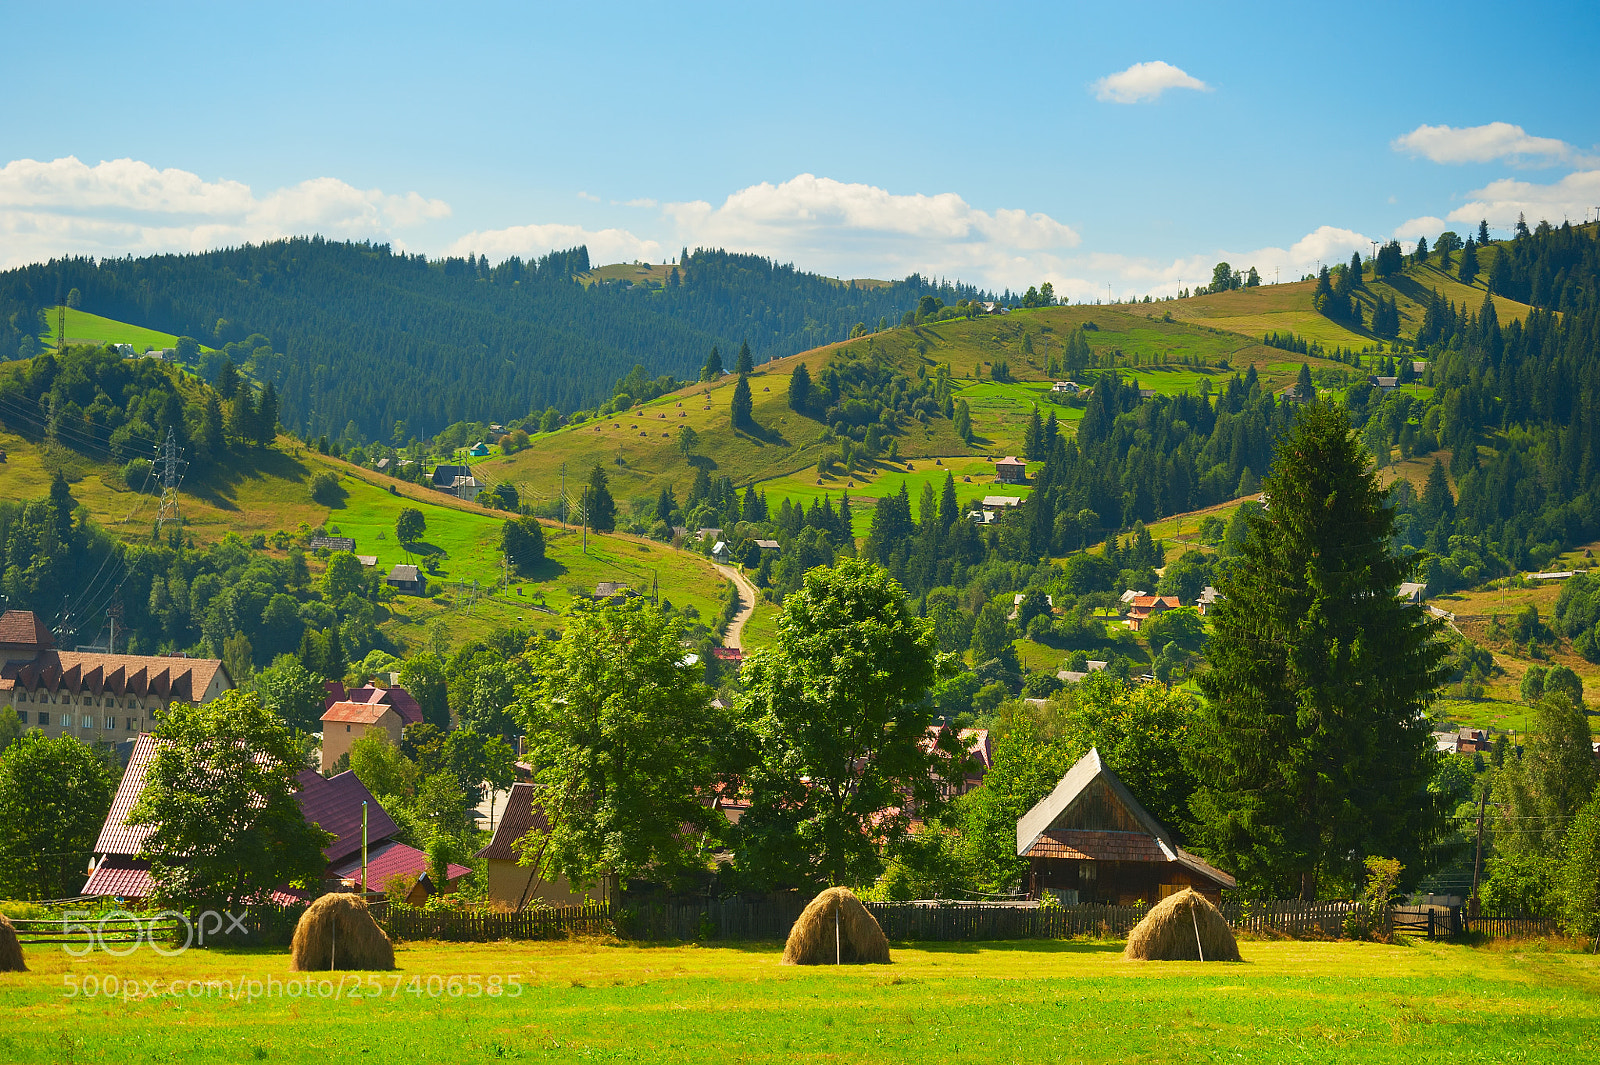 Nikon D700 sample photo. Carpathians mountains village landscape photography